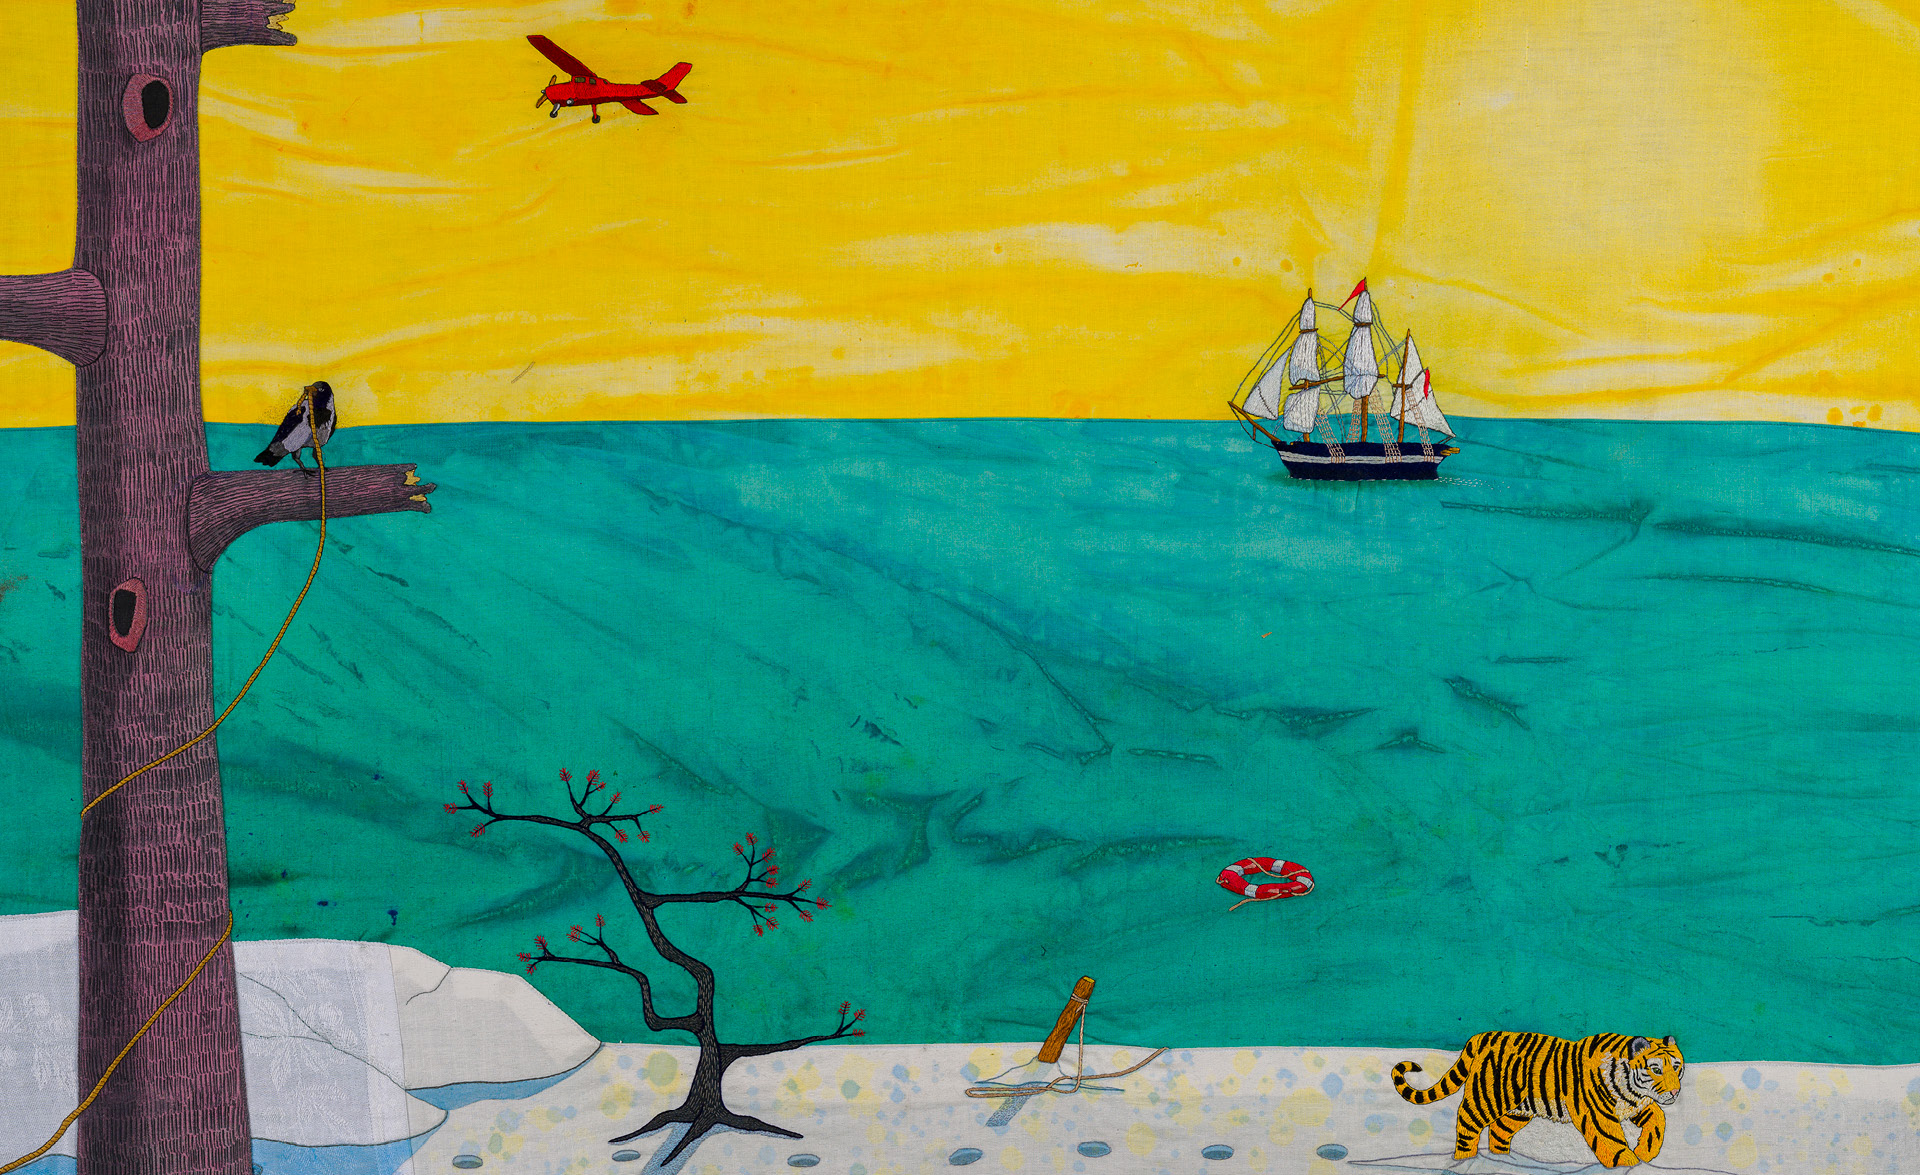 Grönt hav och gul himmel. En segelbåt i fjärran, ett rött flygplan i luften. En tiger traskar på strandkanten och en röd livboj flyter i vattnet. I förgrunden syns ett träd utan löv, med avbrutna grenar och en korp med ett snöre i näbben. Snöret dyker upp på stranden, fastvirad runt en träpåle. 